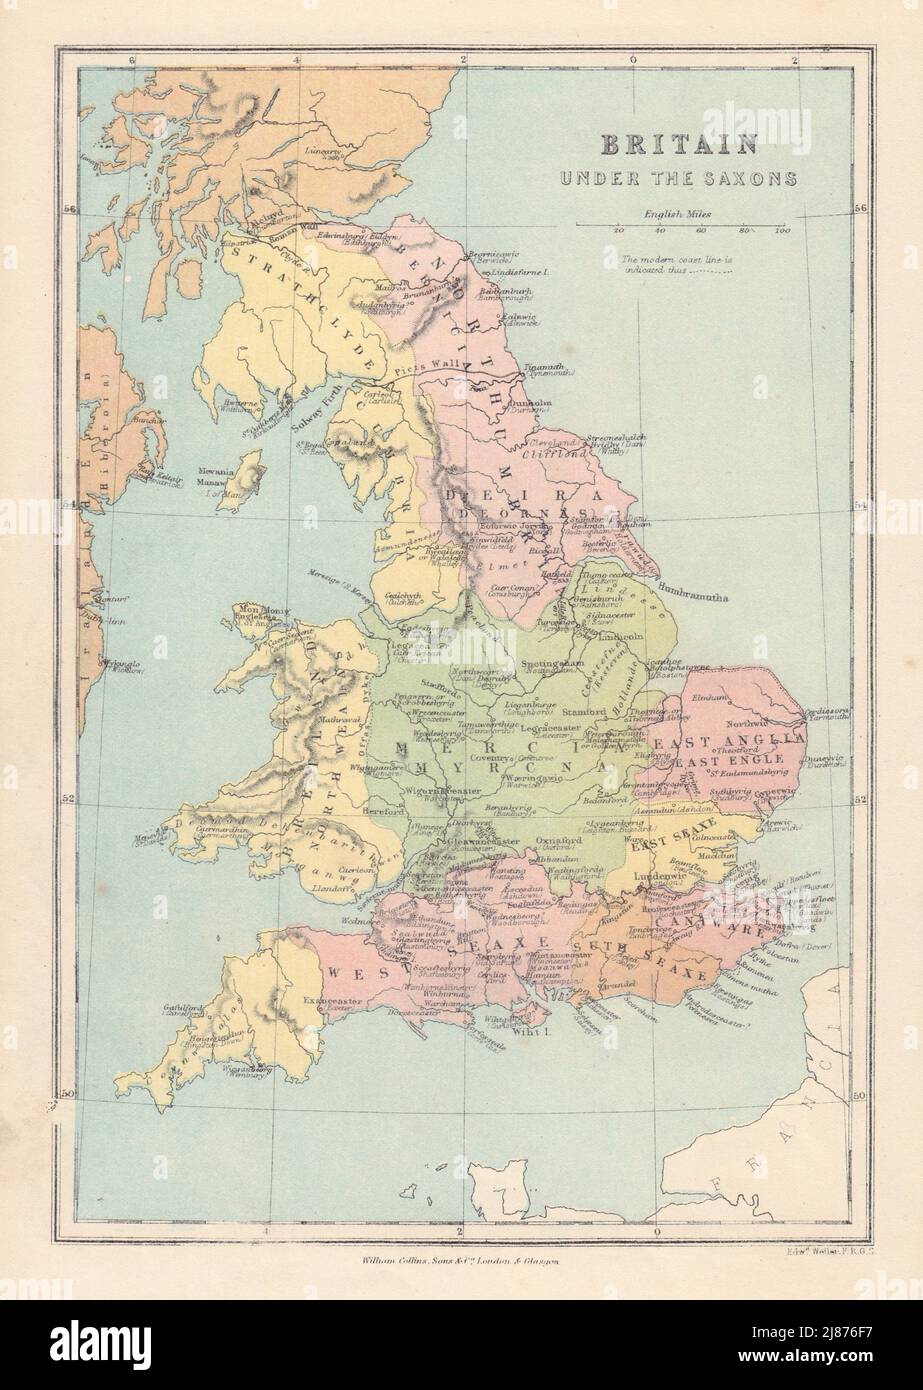 LA GRANDE-BRETAGNE SAXONNE montrant les provinces/comtés et les noms de villes saxonnes. CARTE COLLINS 1873 Banque D'Images